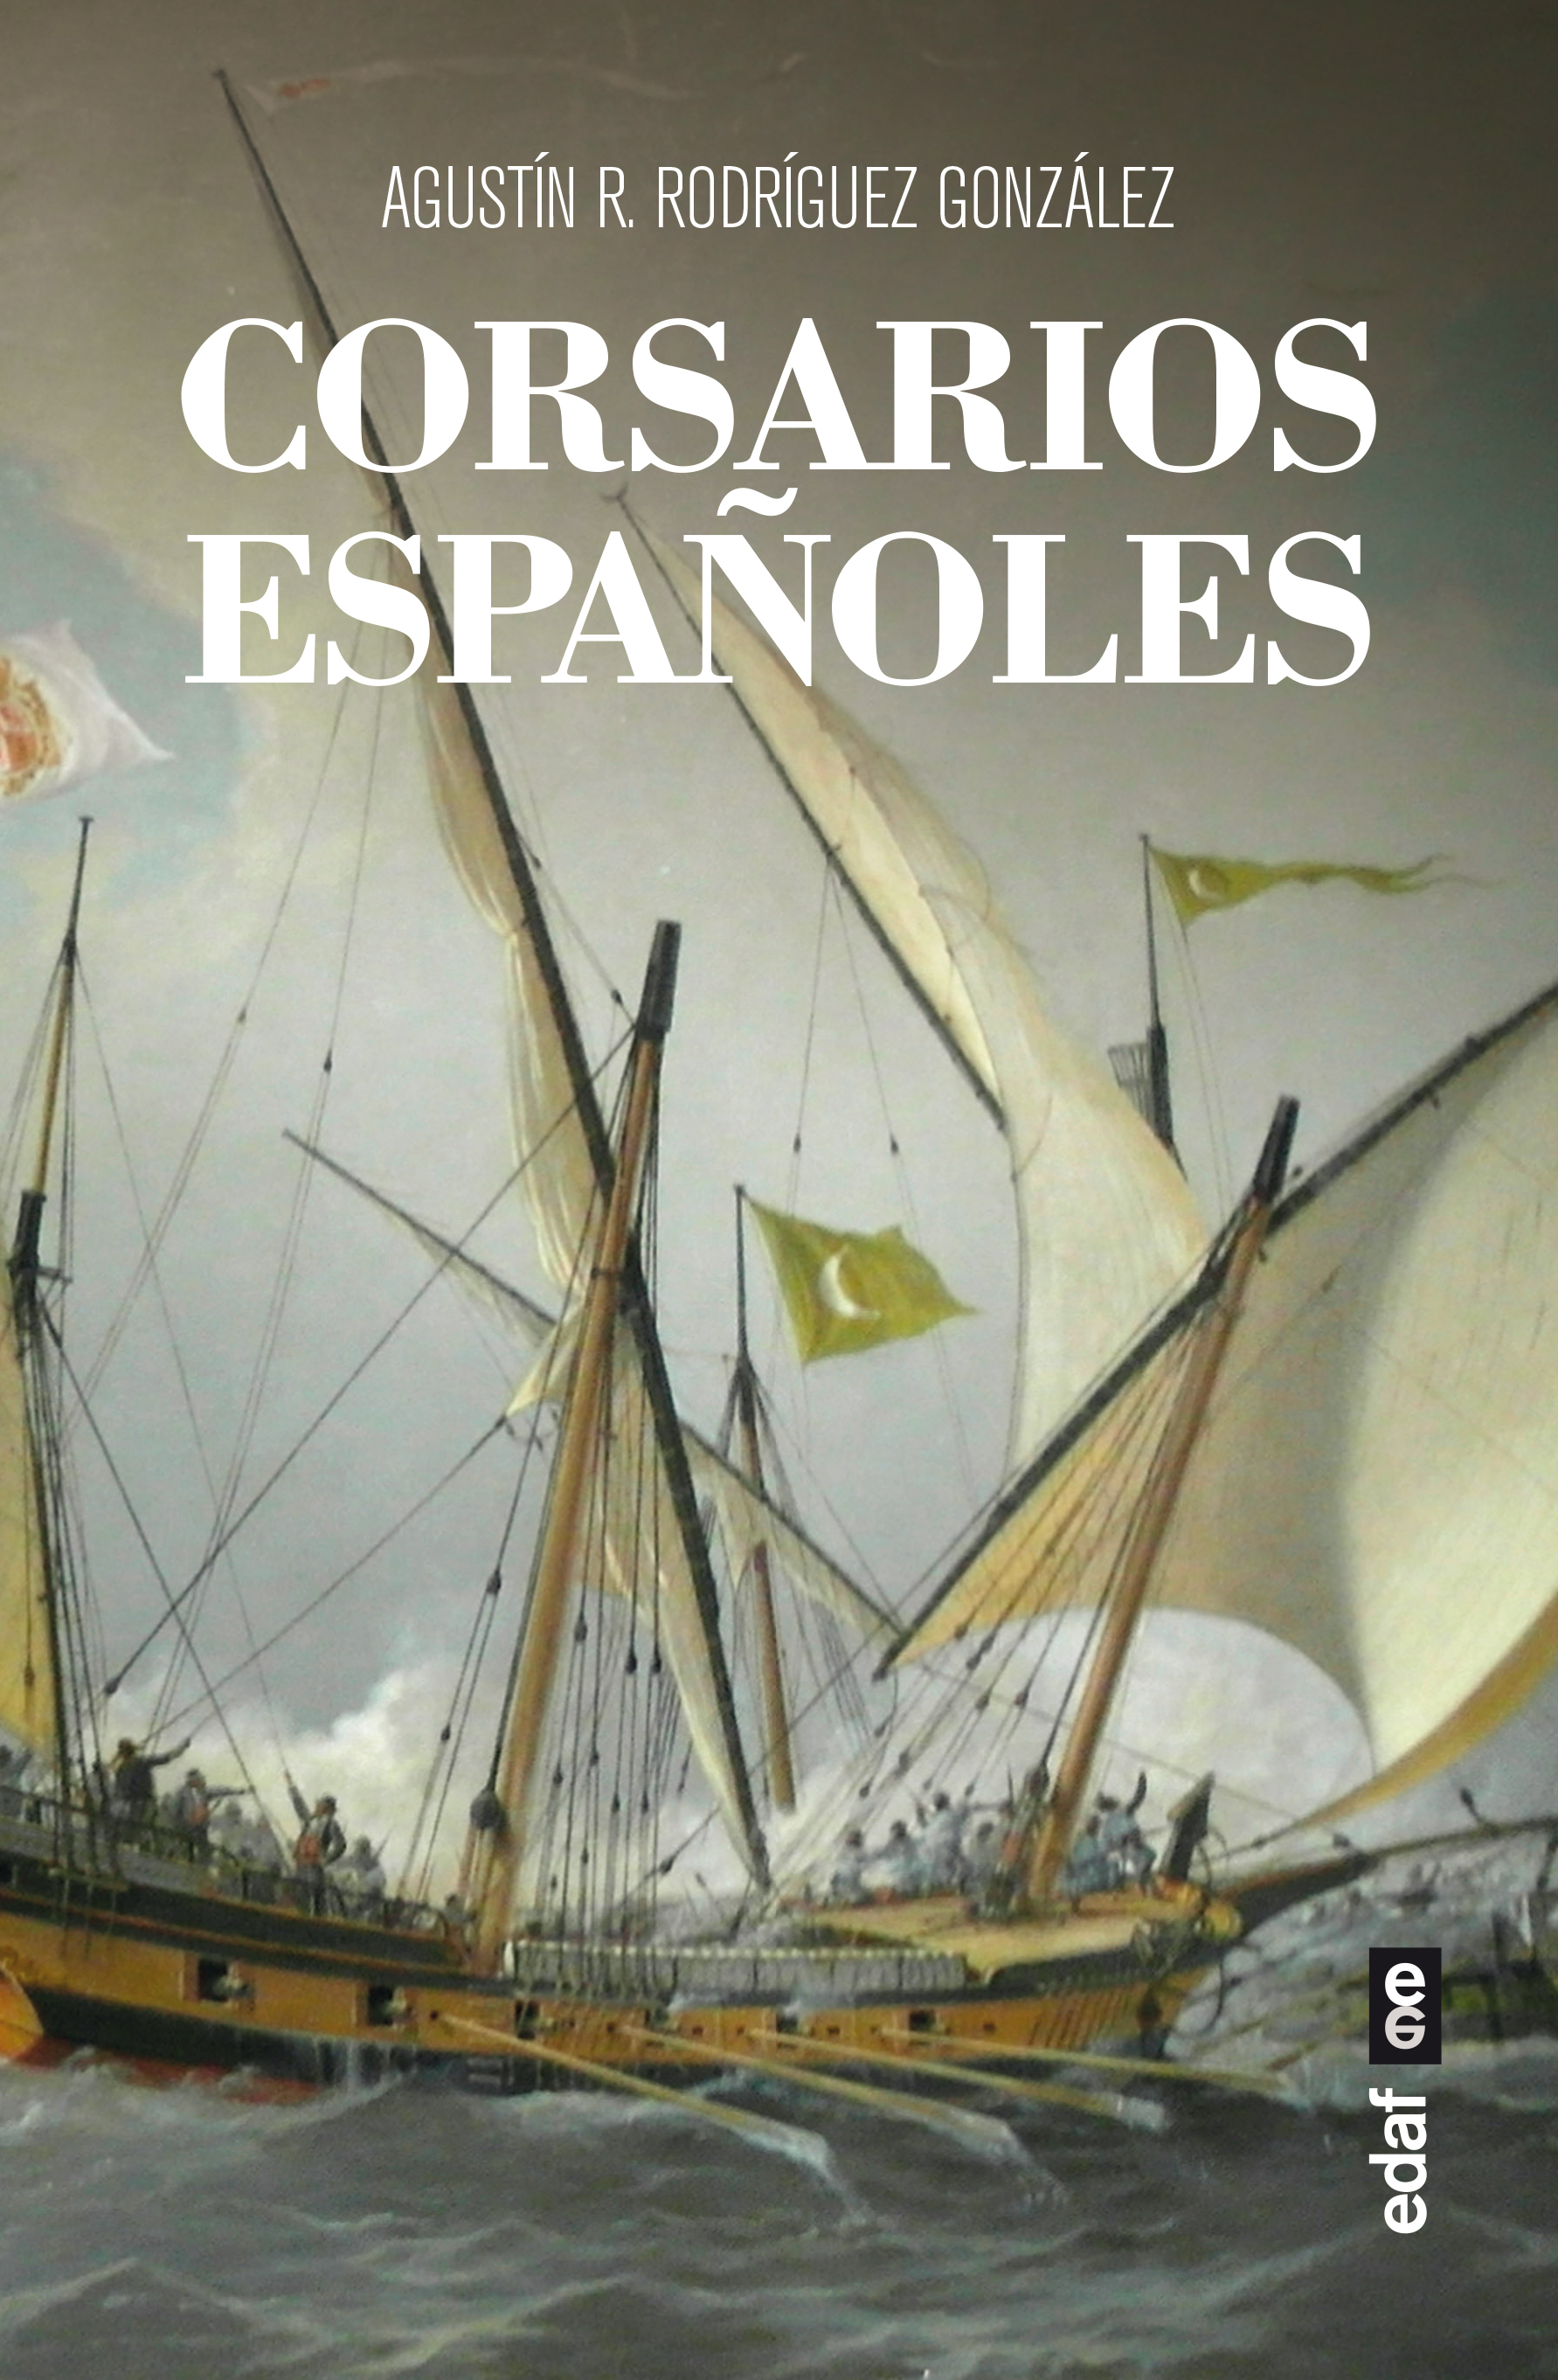 Corsarios españoles - Editorial Edaf S.L.U.